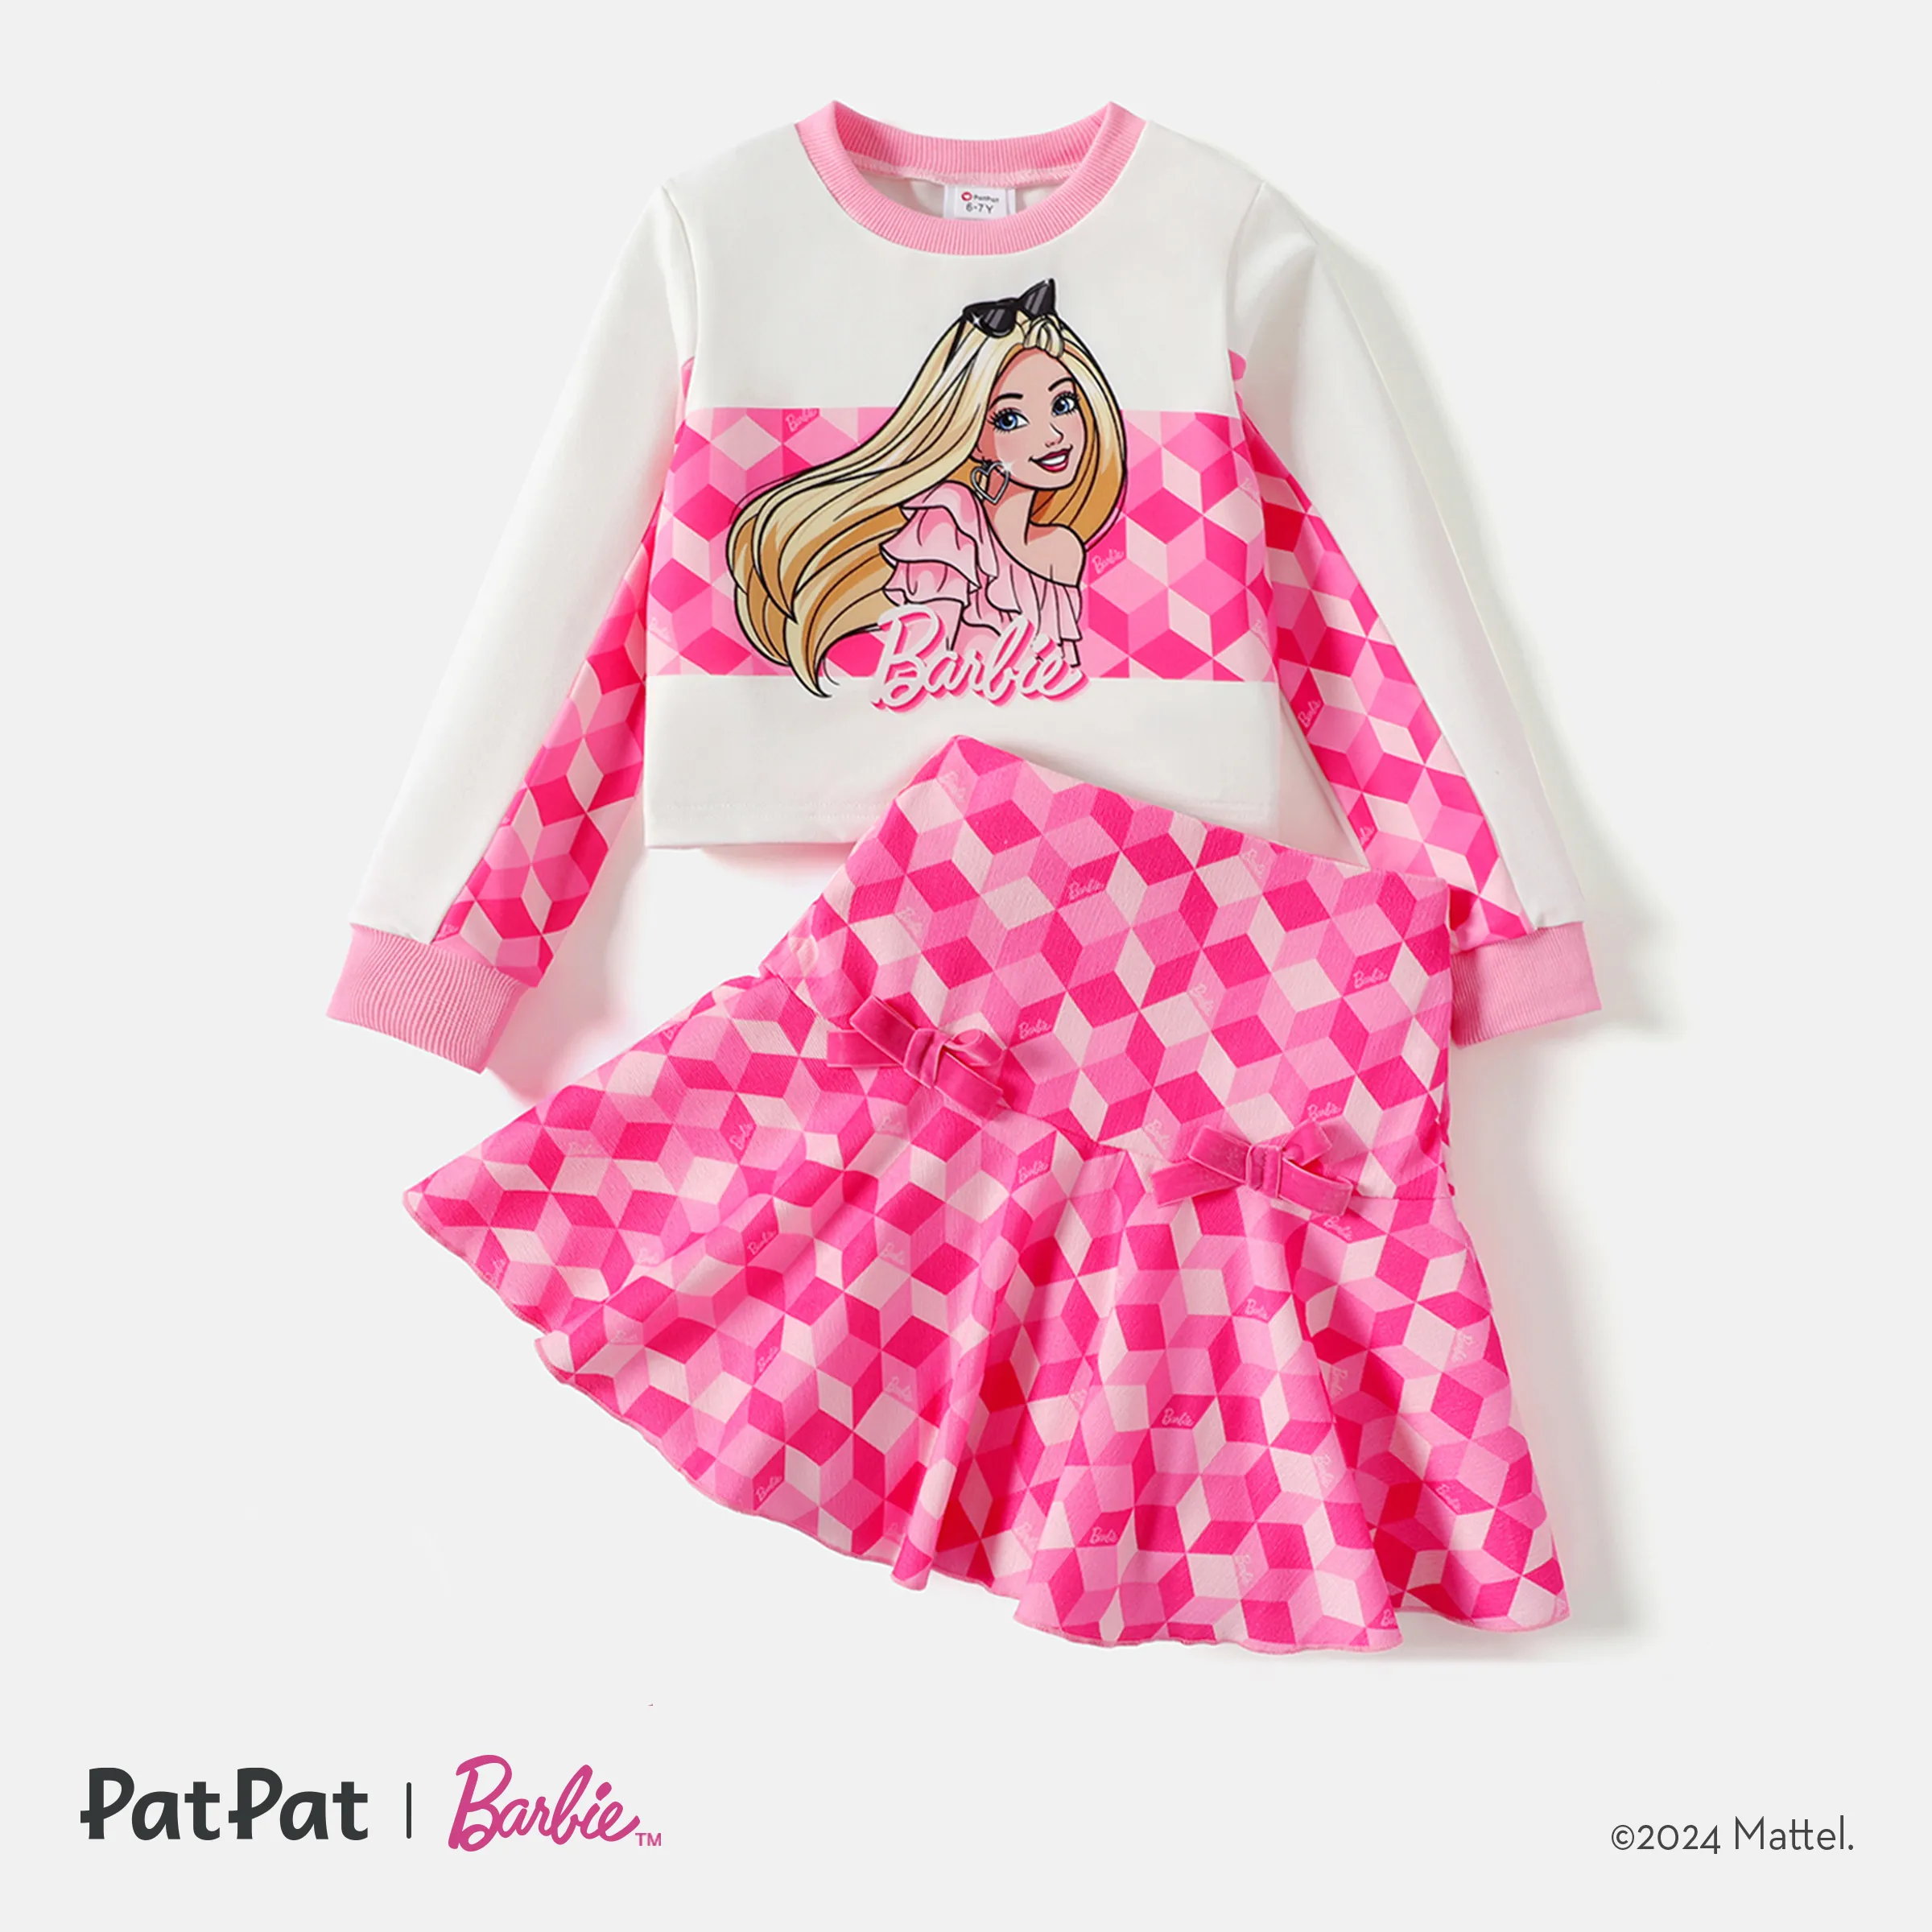 Barbie 2pcs Enfant Fille Plaid Colorblock T-shirt à Manches Longues Et Bowknot Design Jupe Ensemble